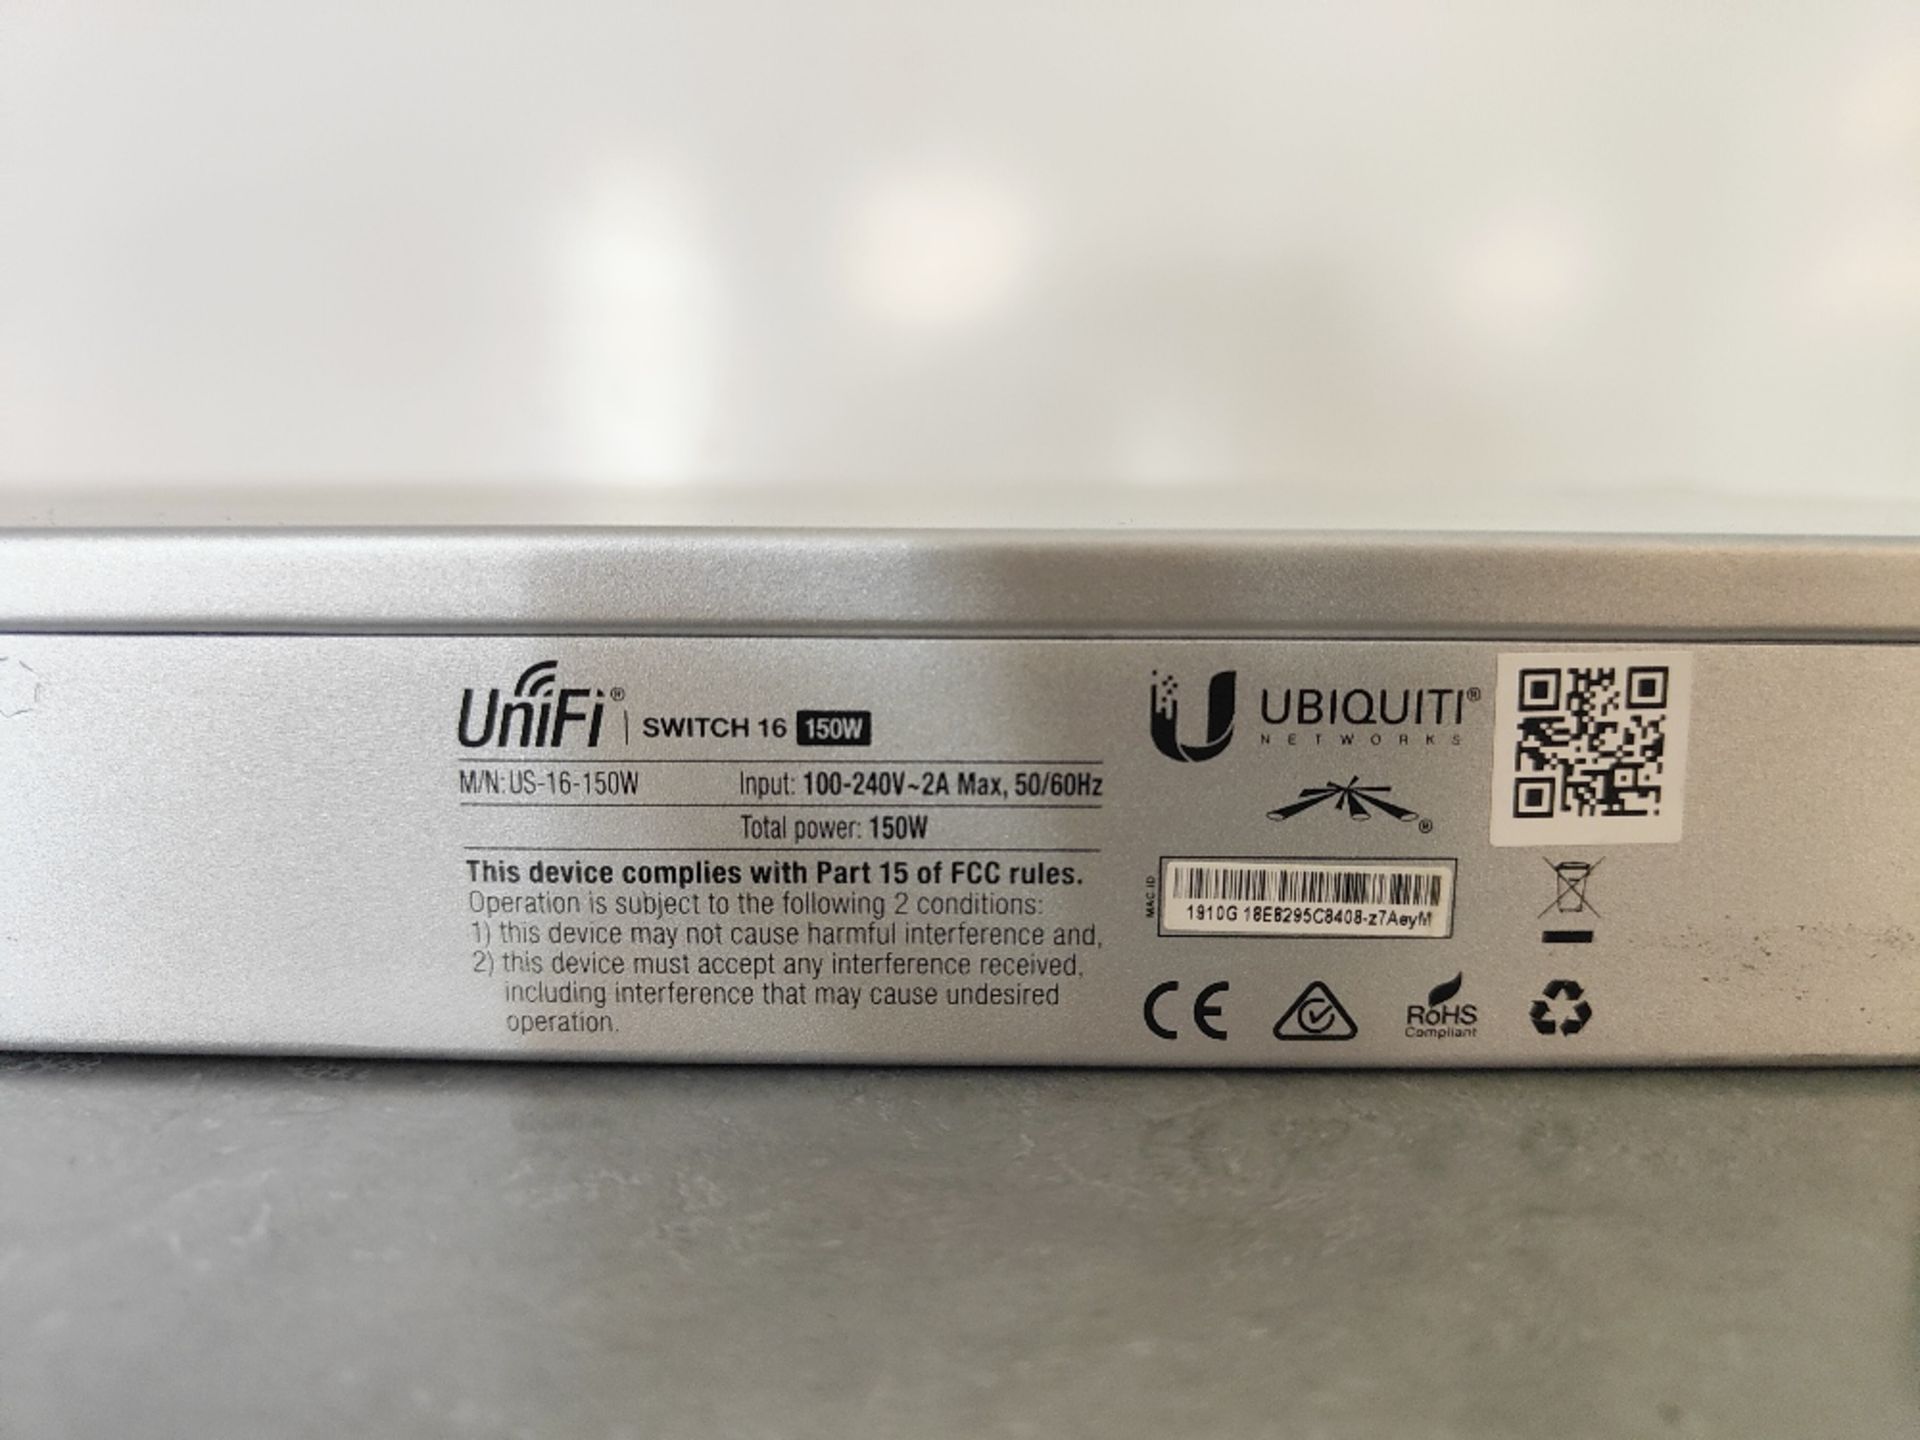 Ubiquiti UniFi US-16-150W Switch 16 network switch - Image 4 of 4